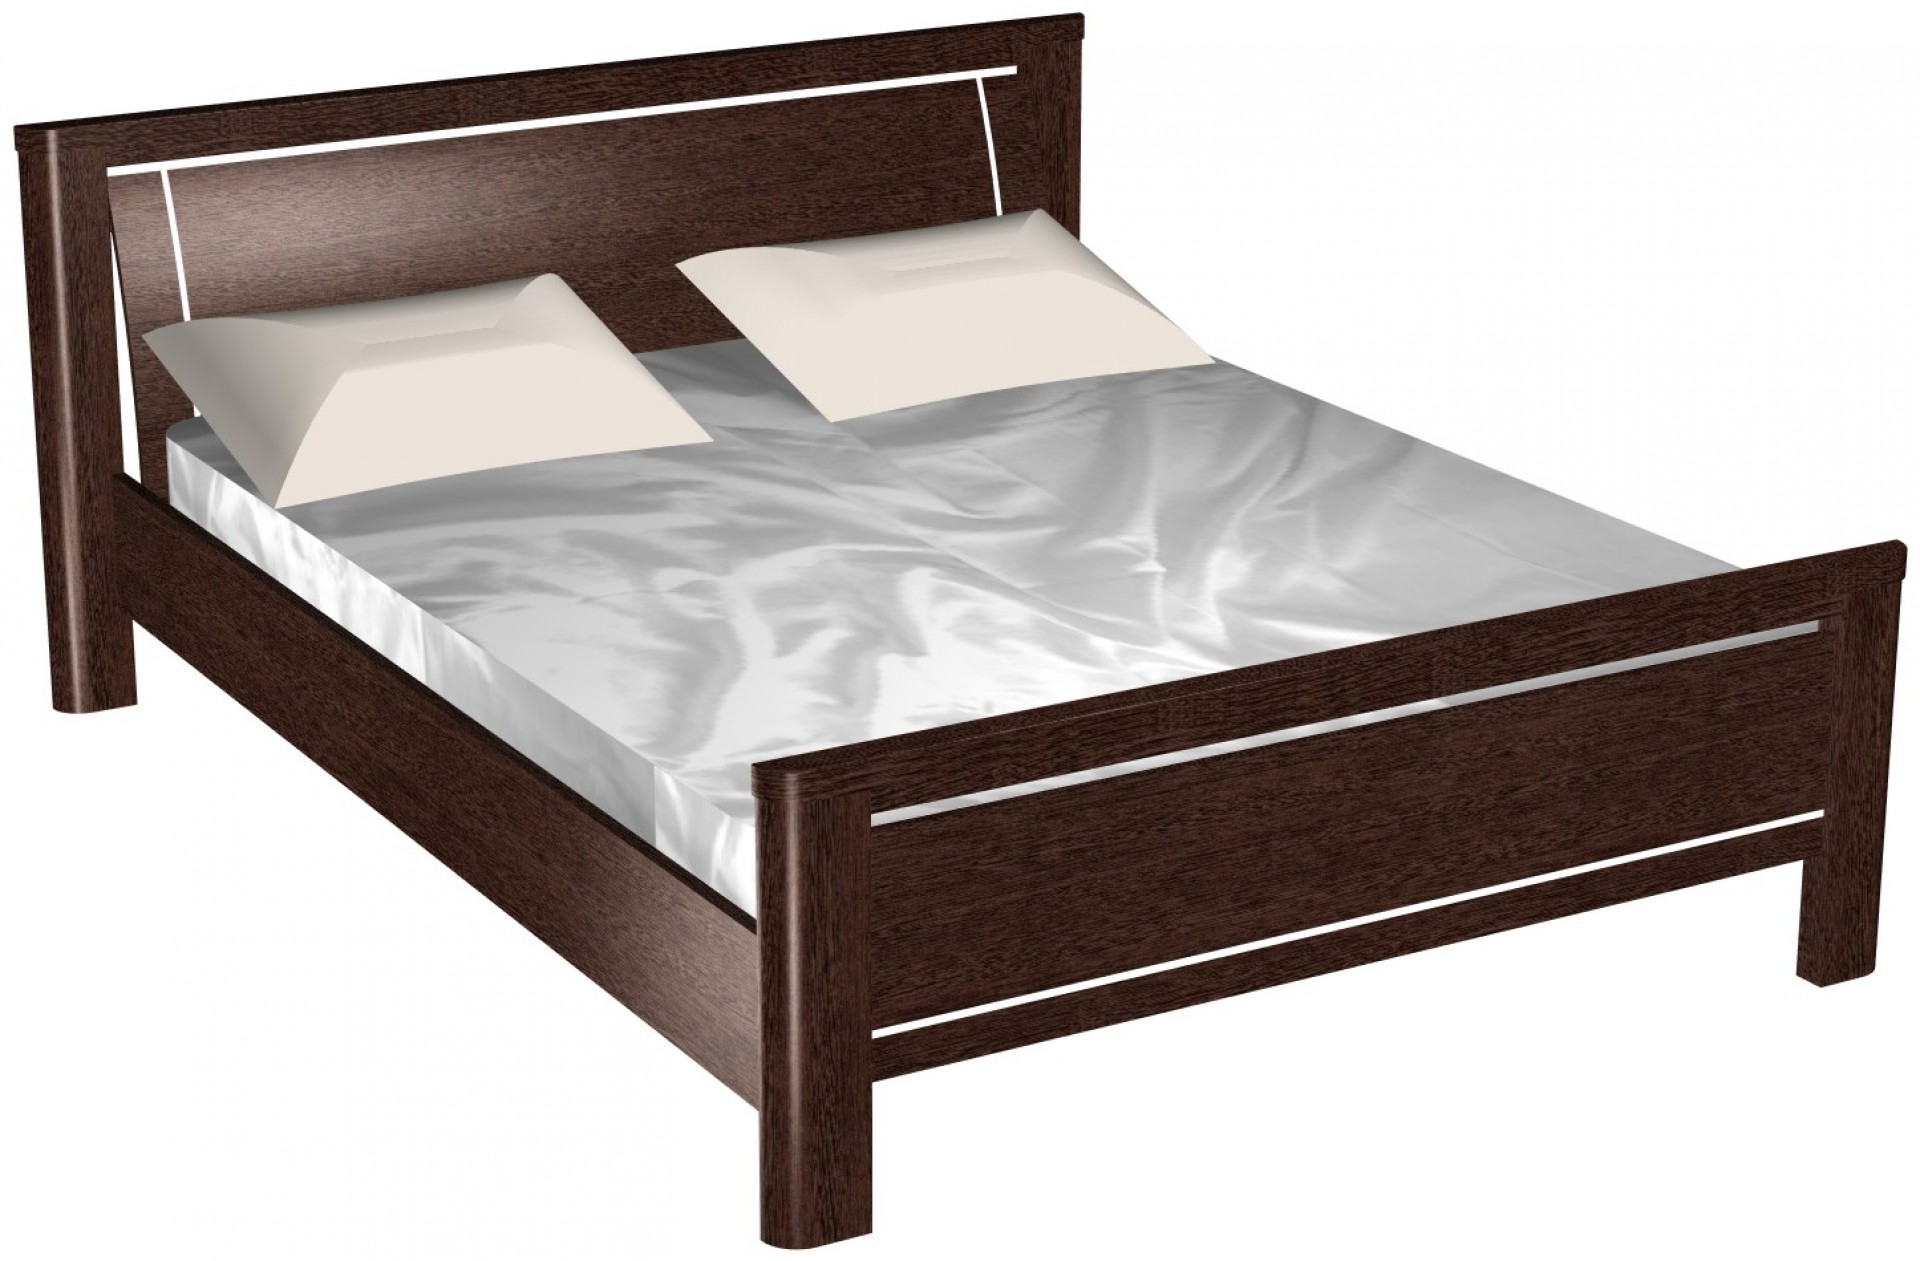 Купить кровать от производителя новосибирск. Кровать Магнолия СБК. Кровать СБК Магнолия венге 160. Спальня Магнолия венге СБК. Кровать 1800 Магнолия СБК.